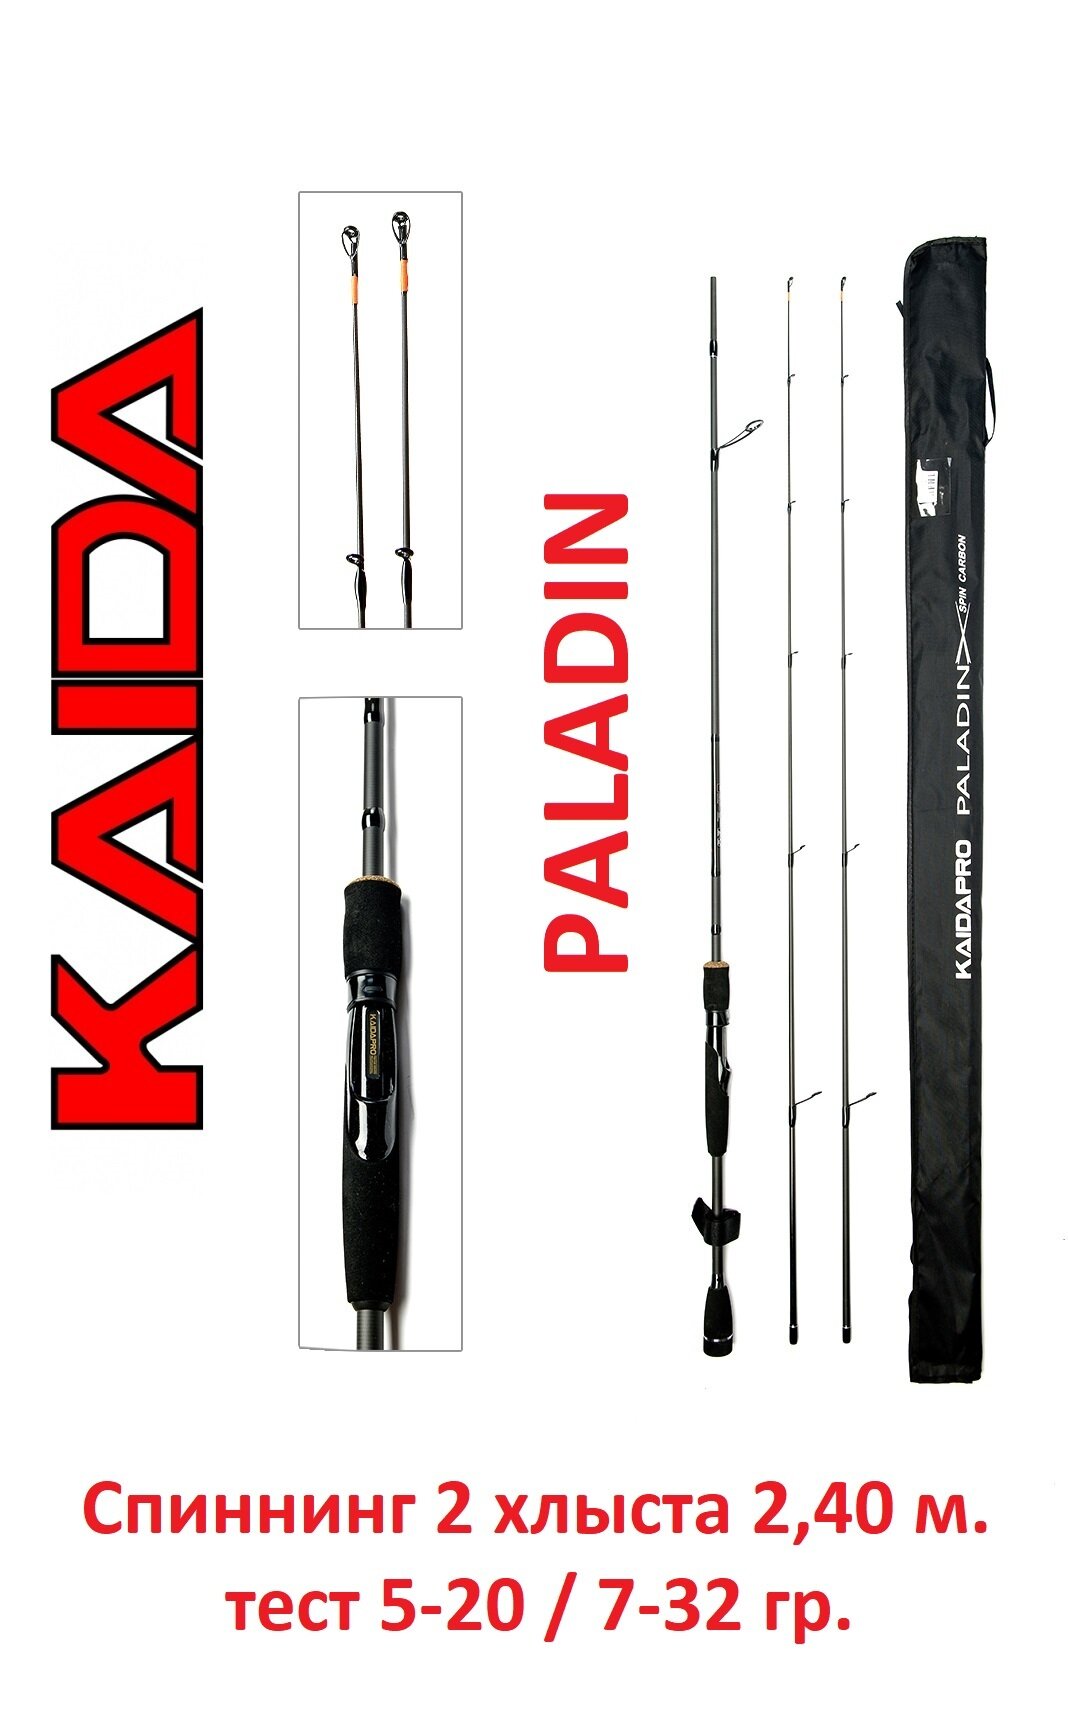 Спиннинг Kaida Paladin 2,40 метра тест 5-20 и 7-32 гр. (2 хлыста)